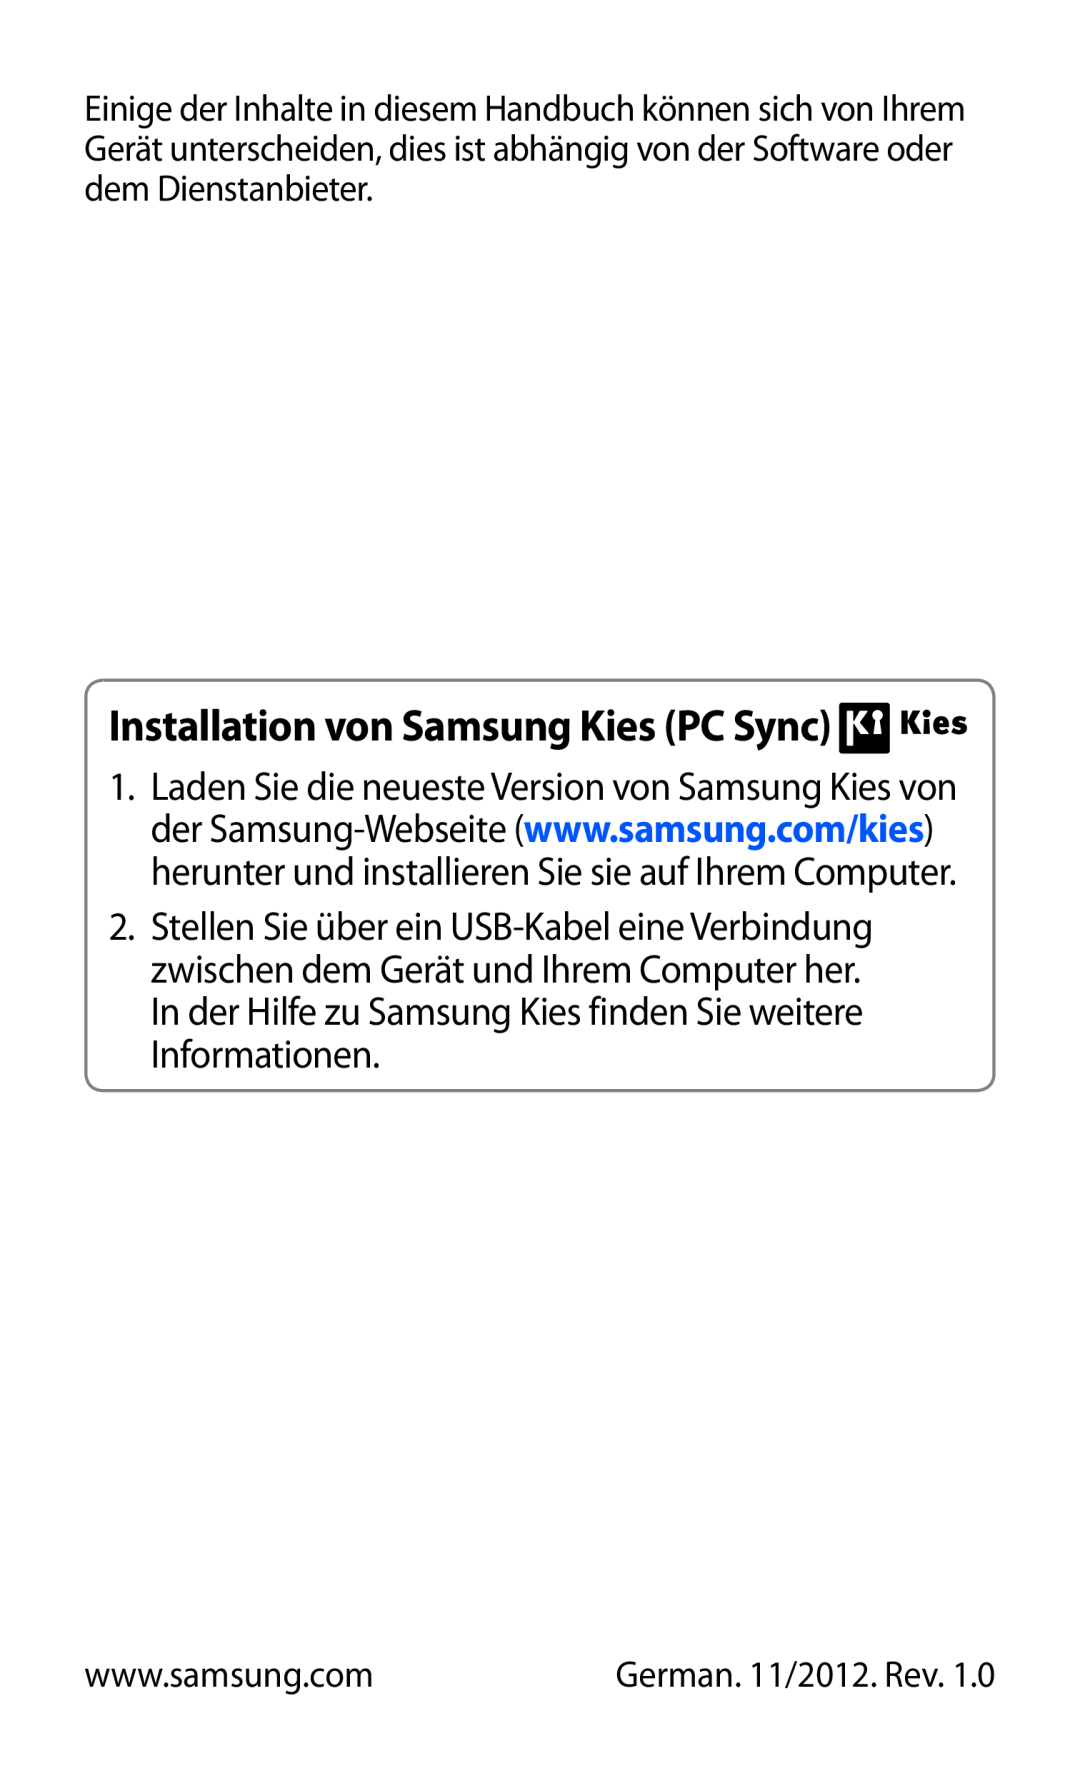 Samsung GT-P5100ZWEATO, GT-P5100ZWAVD2, GT-P5100TSEAUT manual Installation von Samsung Kies PC Sync, German. 11/2012. Rev 